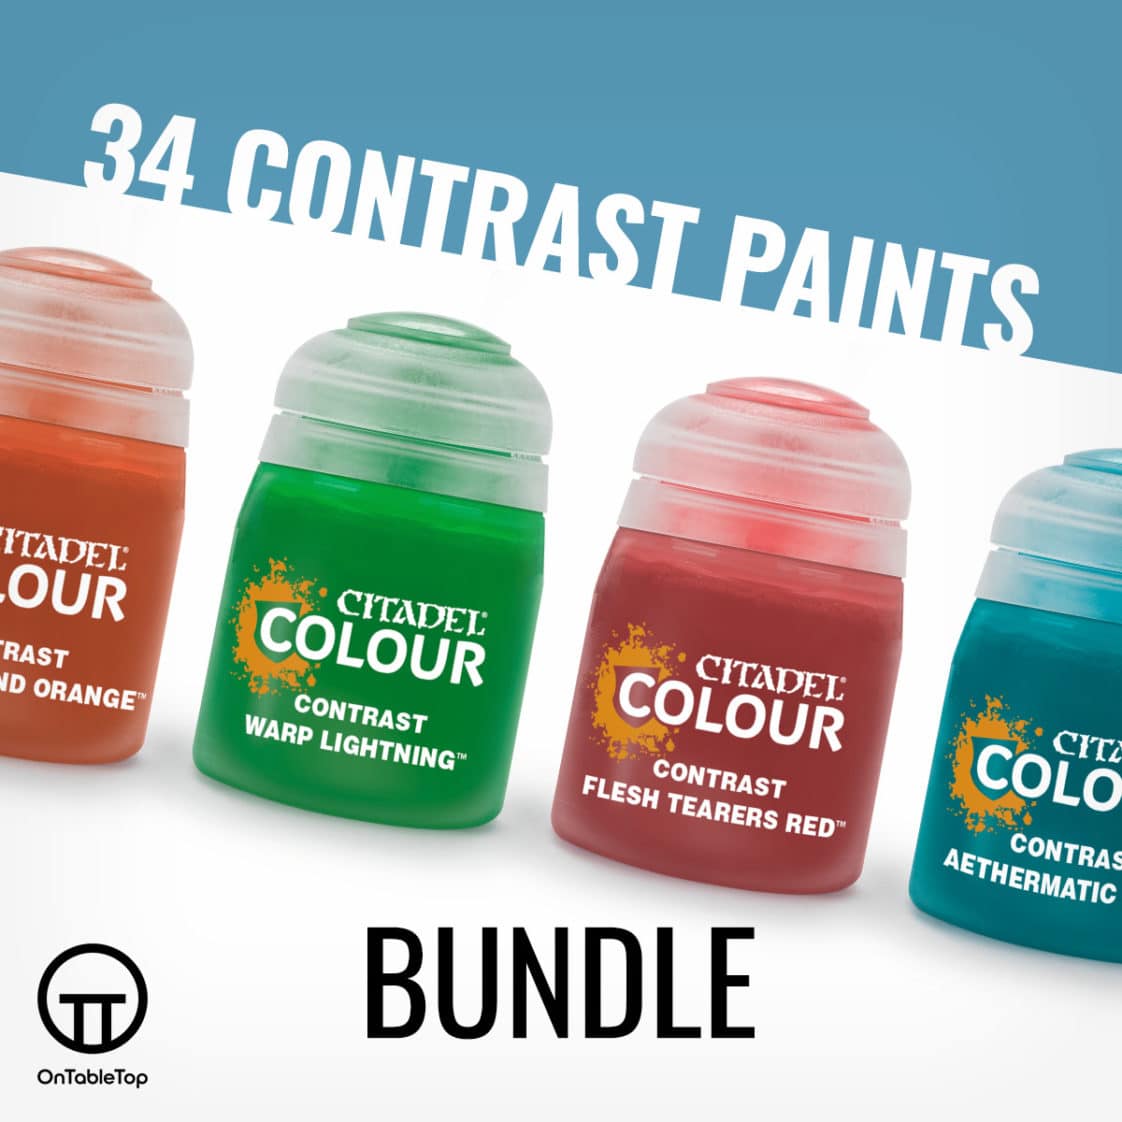 Contrast Paints Bundle - Wave One Collection (2019, 34 paints)